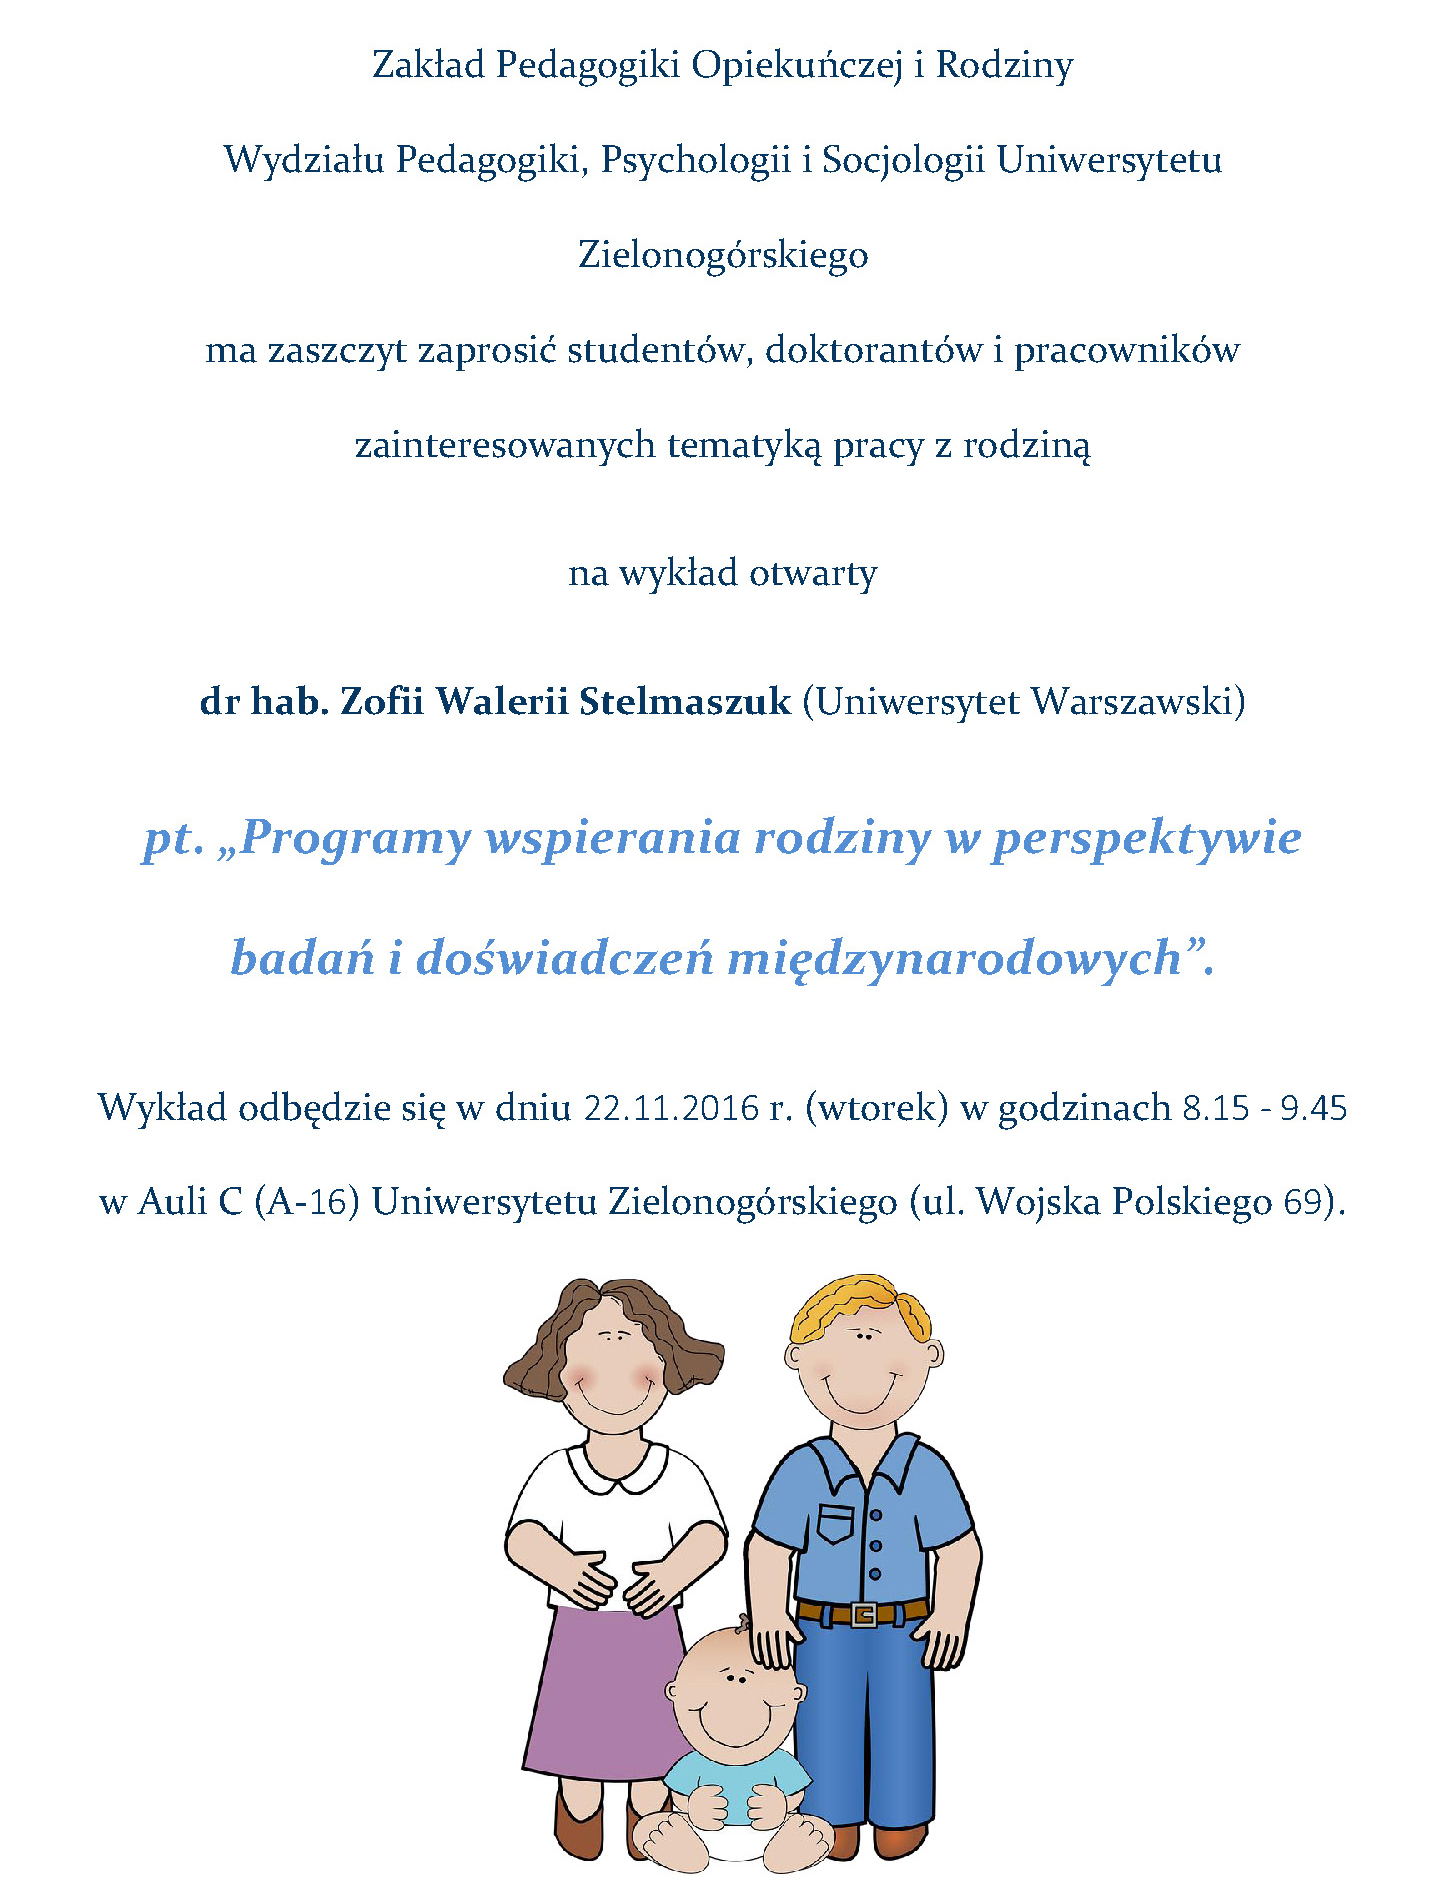 Plakat wykład dr hab. Z.W. Stelmaszuk 22.11.2016.jpg